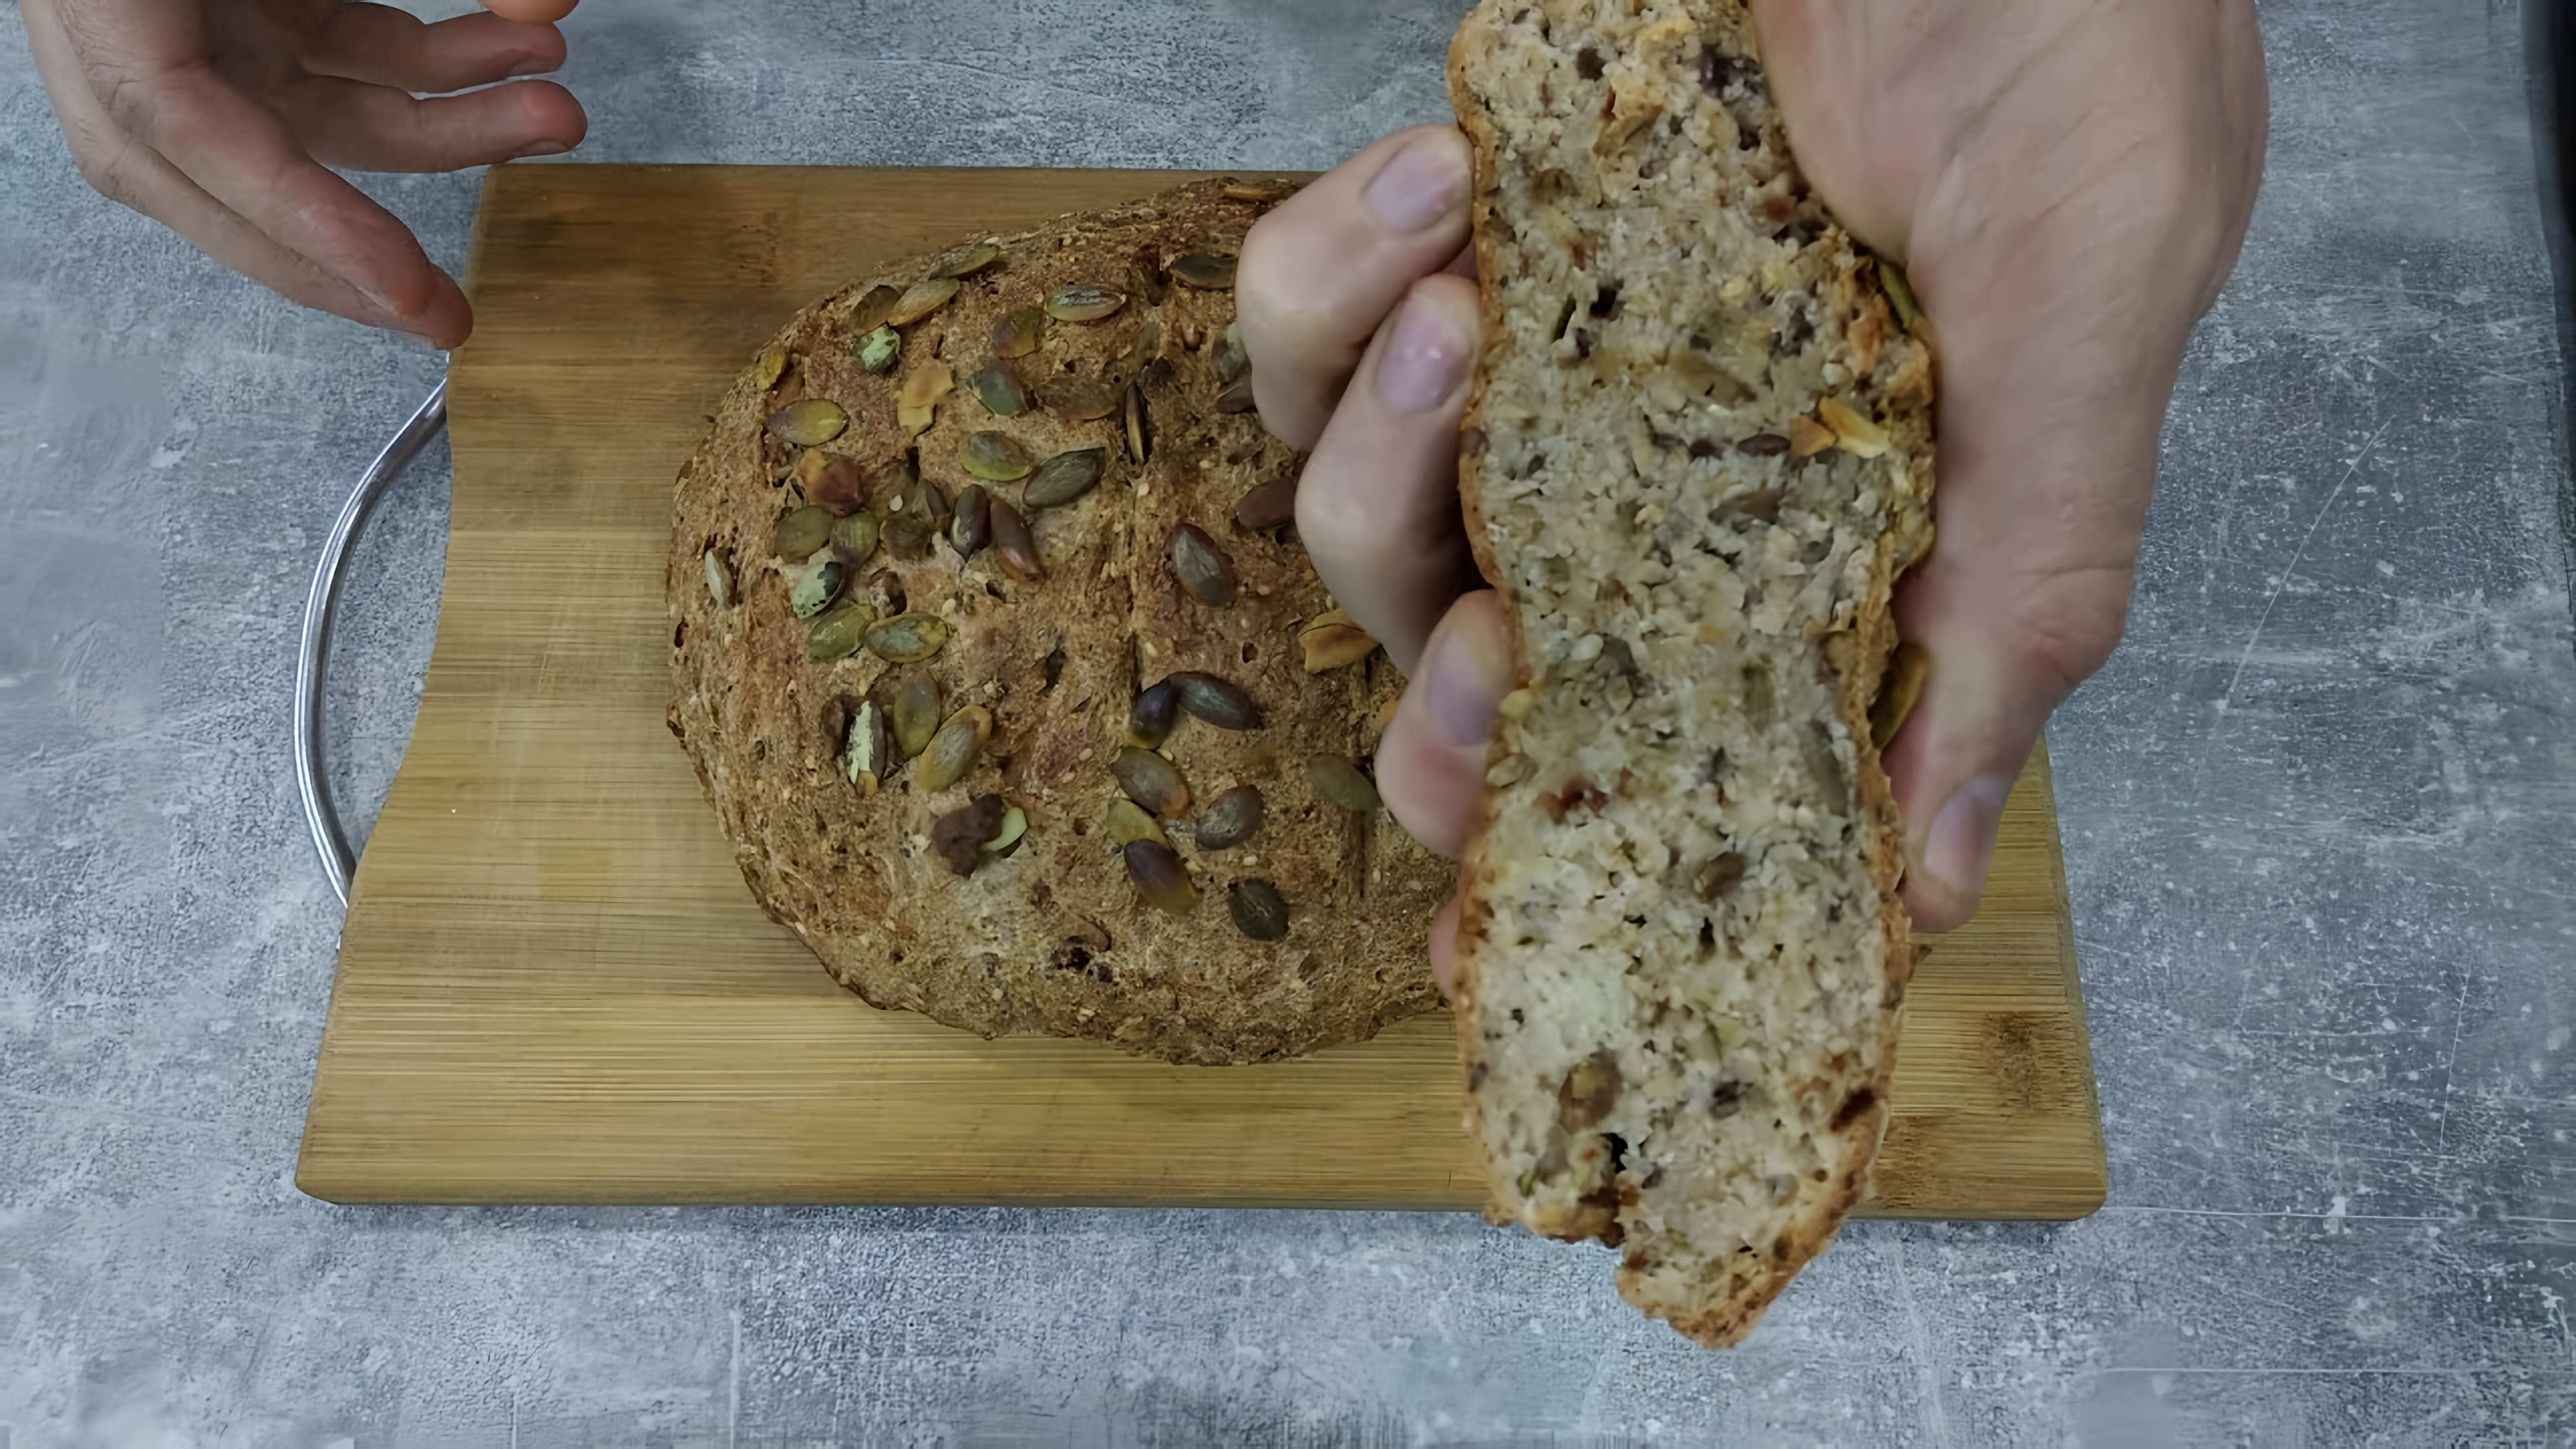 "Просто смешал и в духовку: рецепт цельнозернового хлеба без замеса и дрожжей" - это видео-ролик, который демонстрирует простой и быстрый способ приготовления цельнозернового хлеба без использования дрожжей и замеса